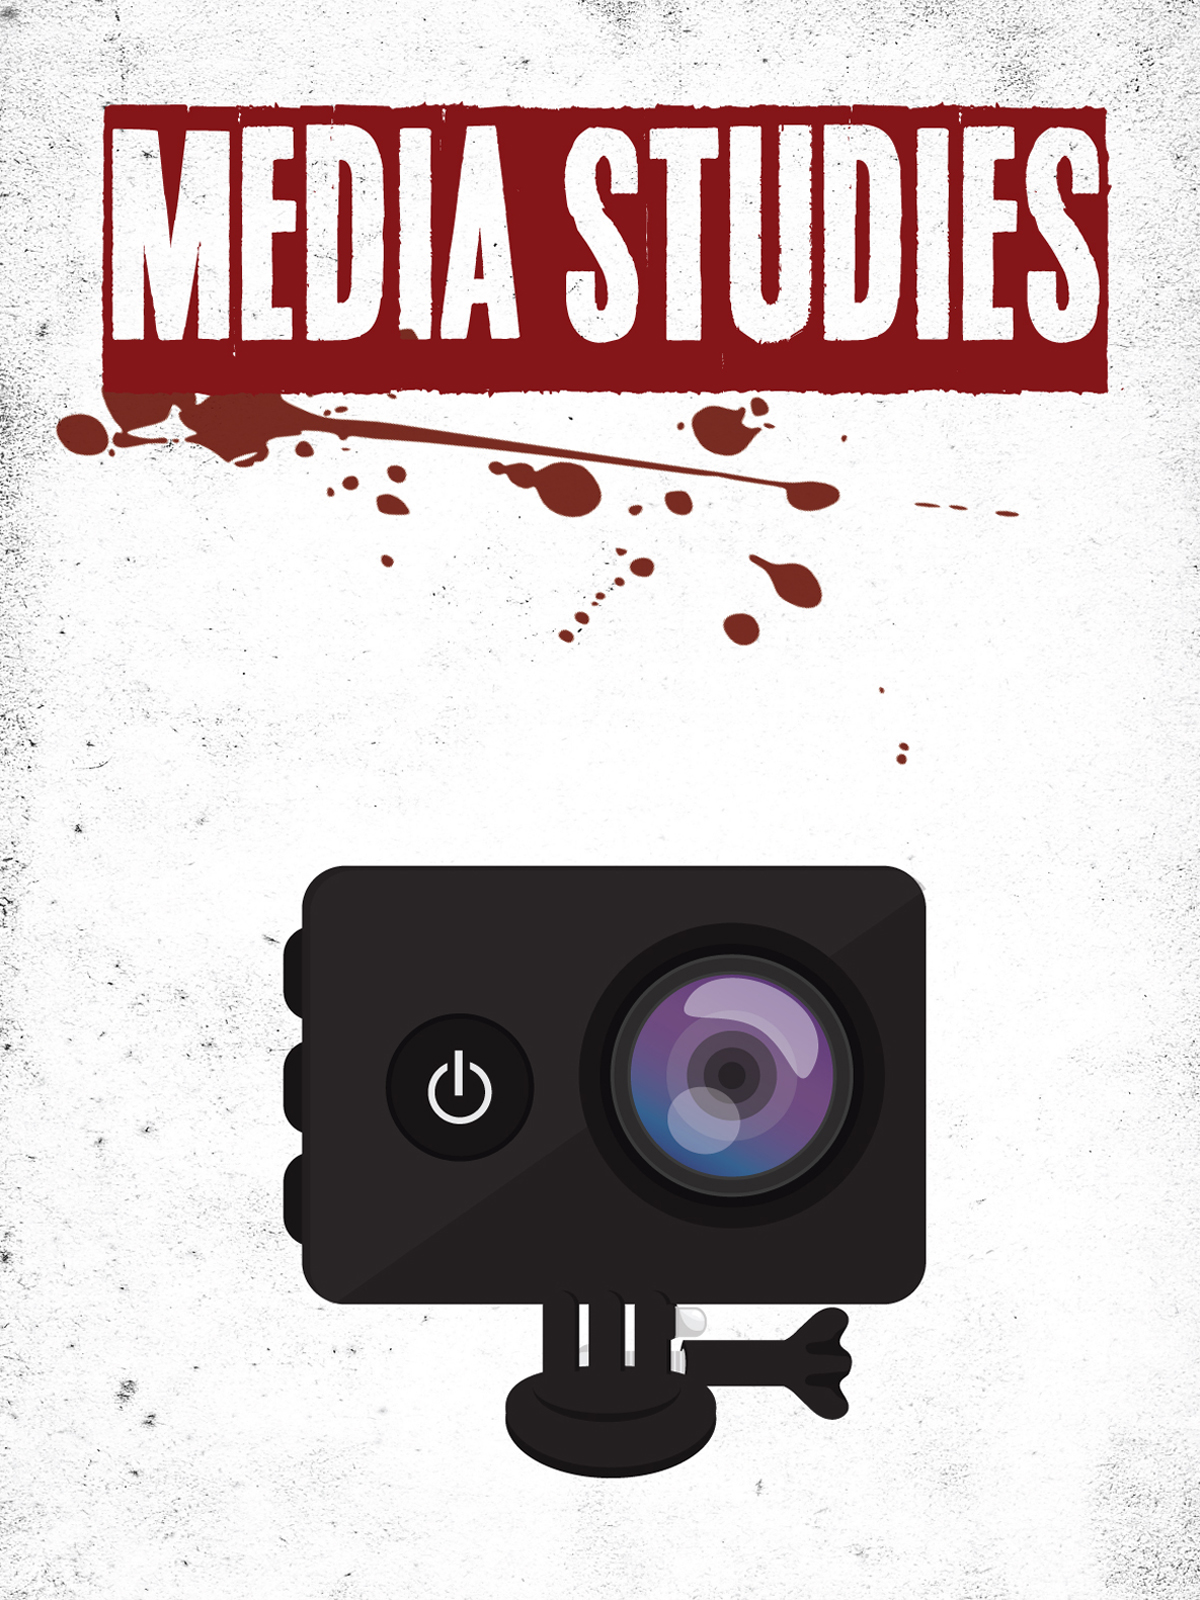 Media Studies (2017) постер